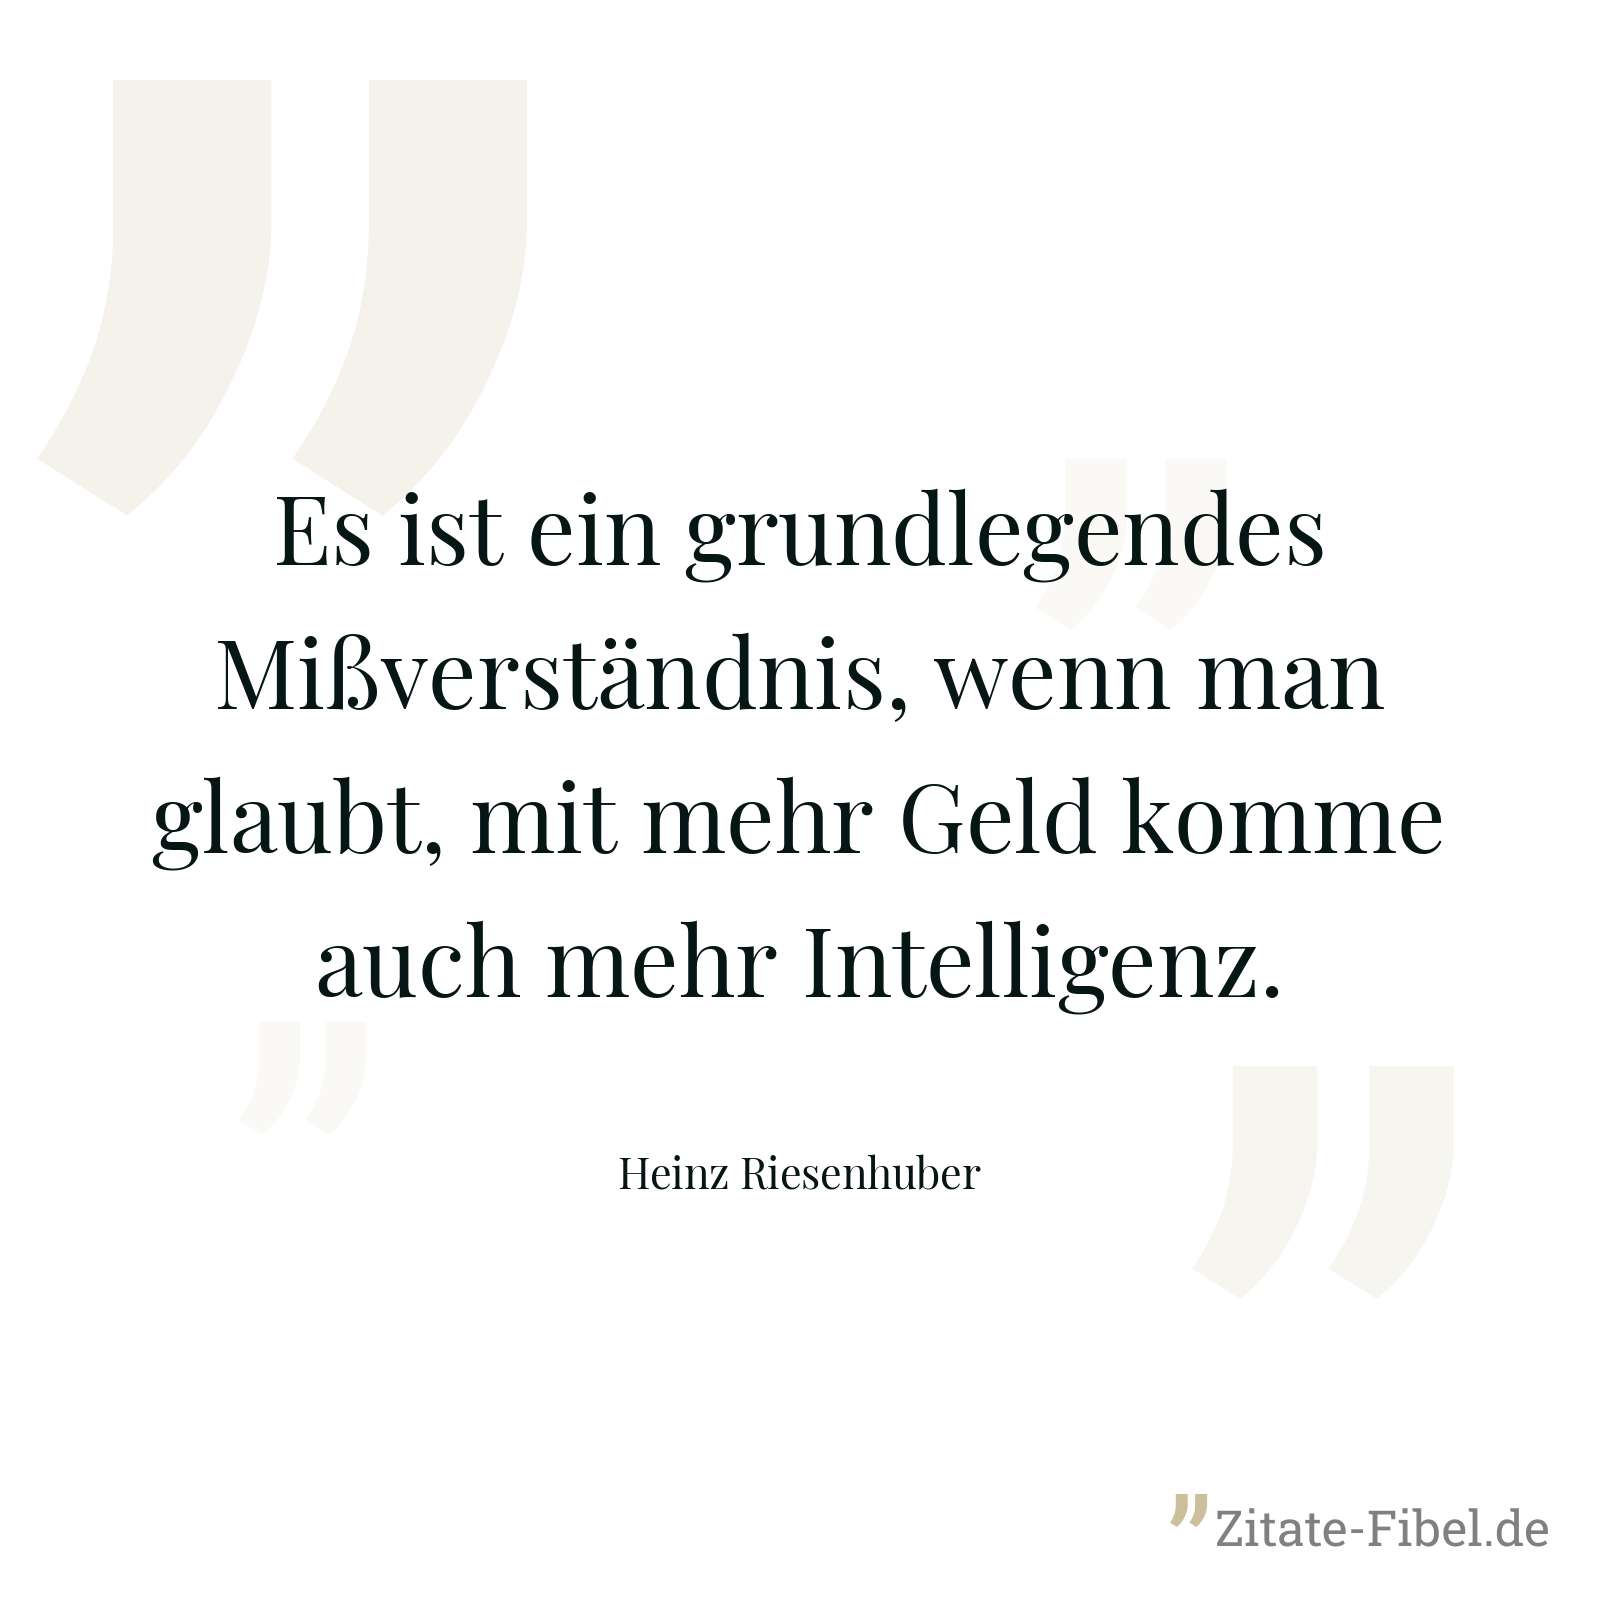 Es ist ein grundlegendes Mißverständnis, wenn man glaubt, mit mehr Geld komme auch mehr Intelligenz. - Heinz Riesenhuber